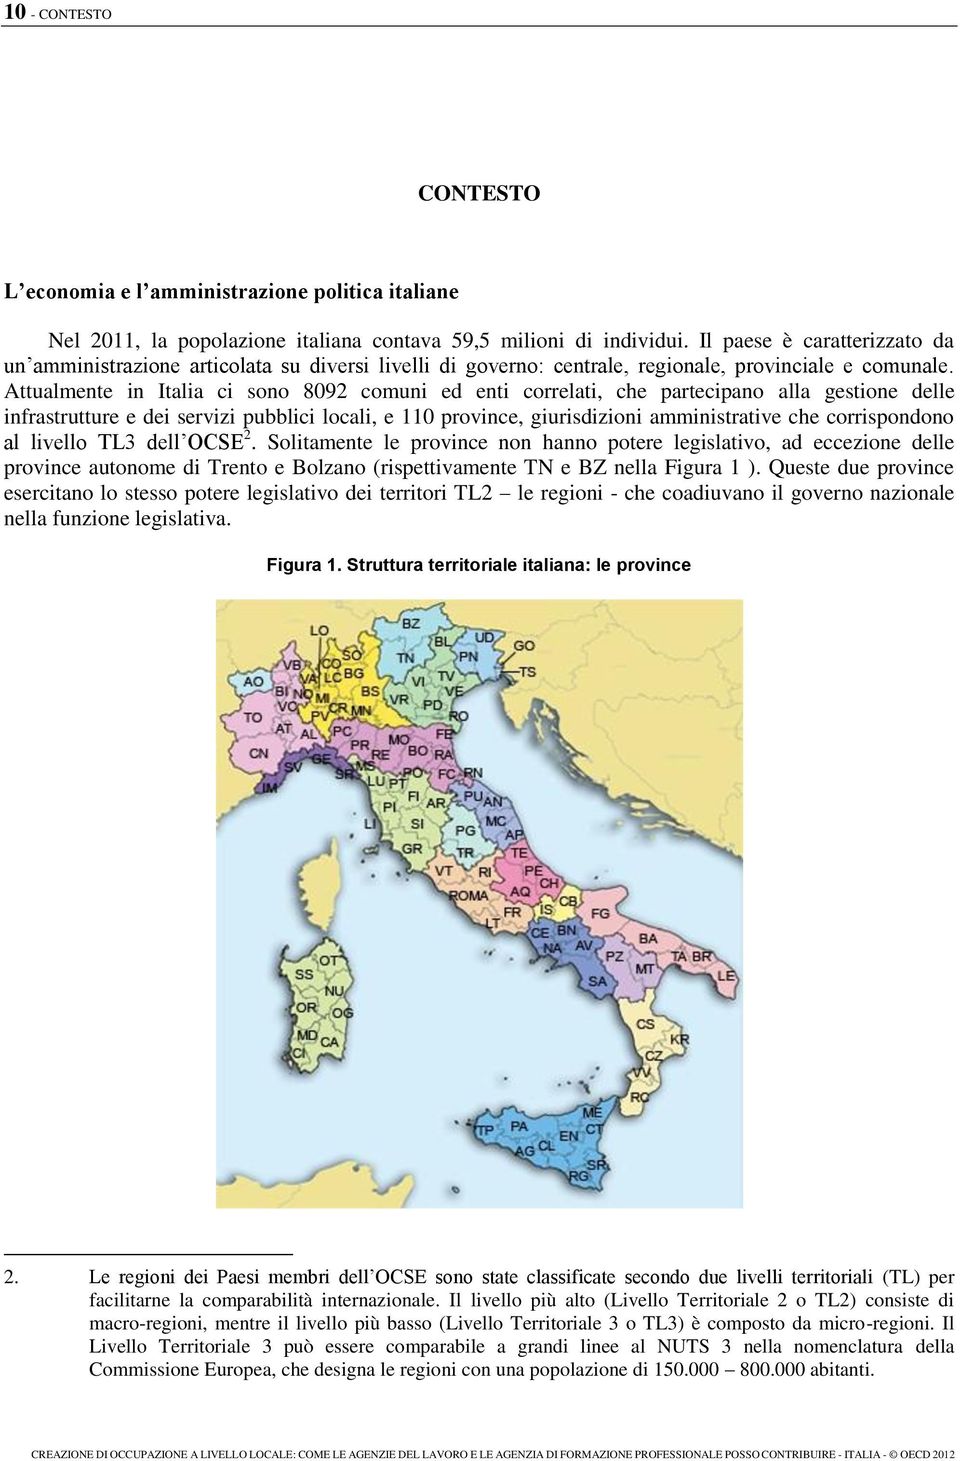 Attualmente in Italia ci sono 8092 comuni ed enti correlati, che partecipano alla gestione delle infrastrutture e dei servizi pubblici locali, e 110 province, giurisdizioni amministrative che